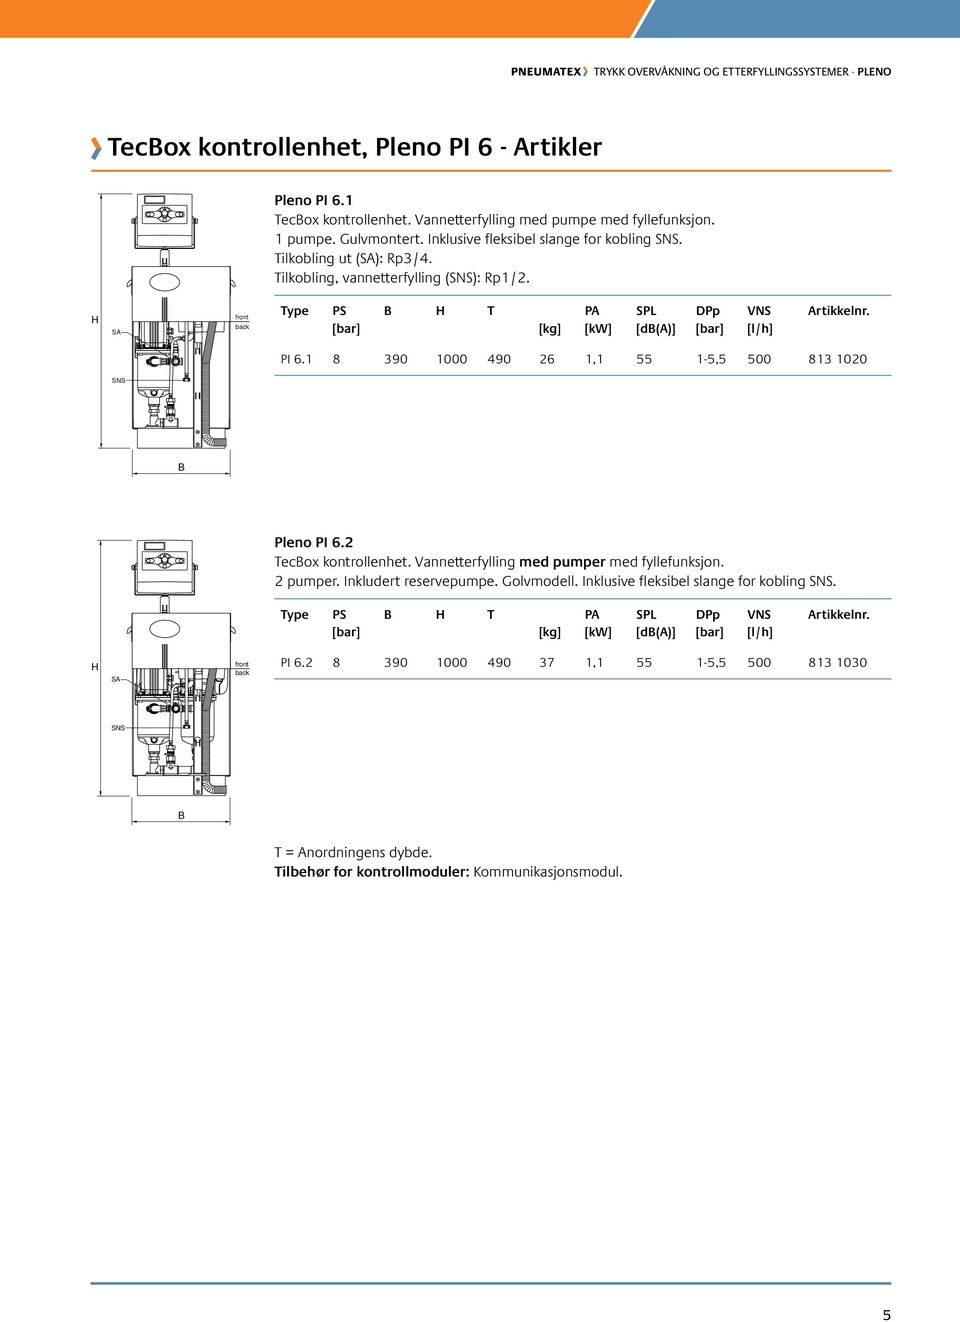 1 8 390 1000 490 26 1,1 55 1-5,5 500 813 1020 SNS Pleno PI 6.2 Tecox kontrollenhet. Vannetterfylling med pumper med fyllefunksjon. 2 pumper. Inkludert reservepumpe.